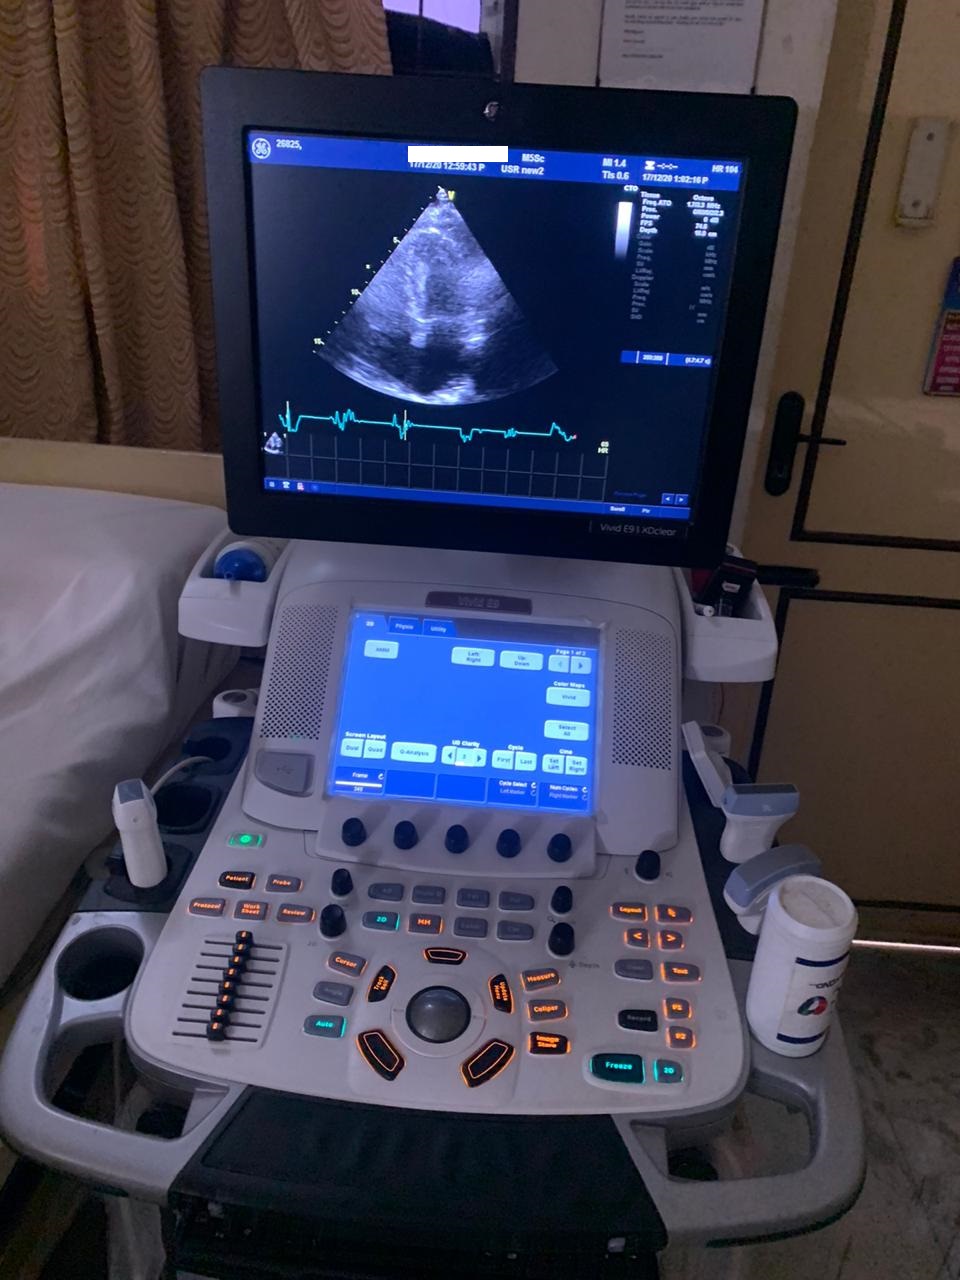 20Med Ultrasound Diagnostic GE HEALTHCARE VIVID E9